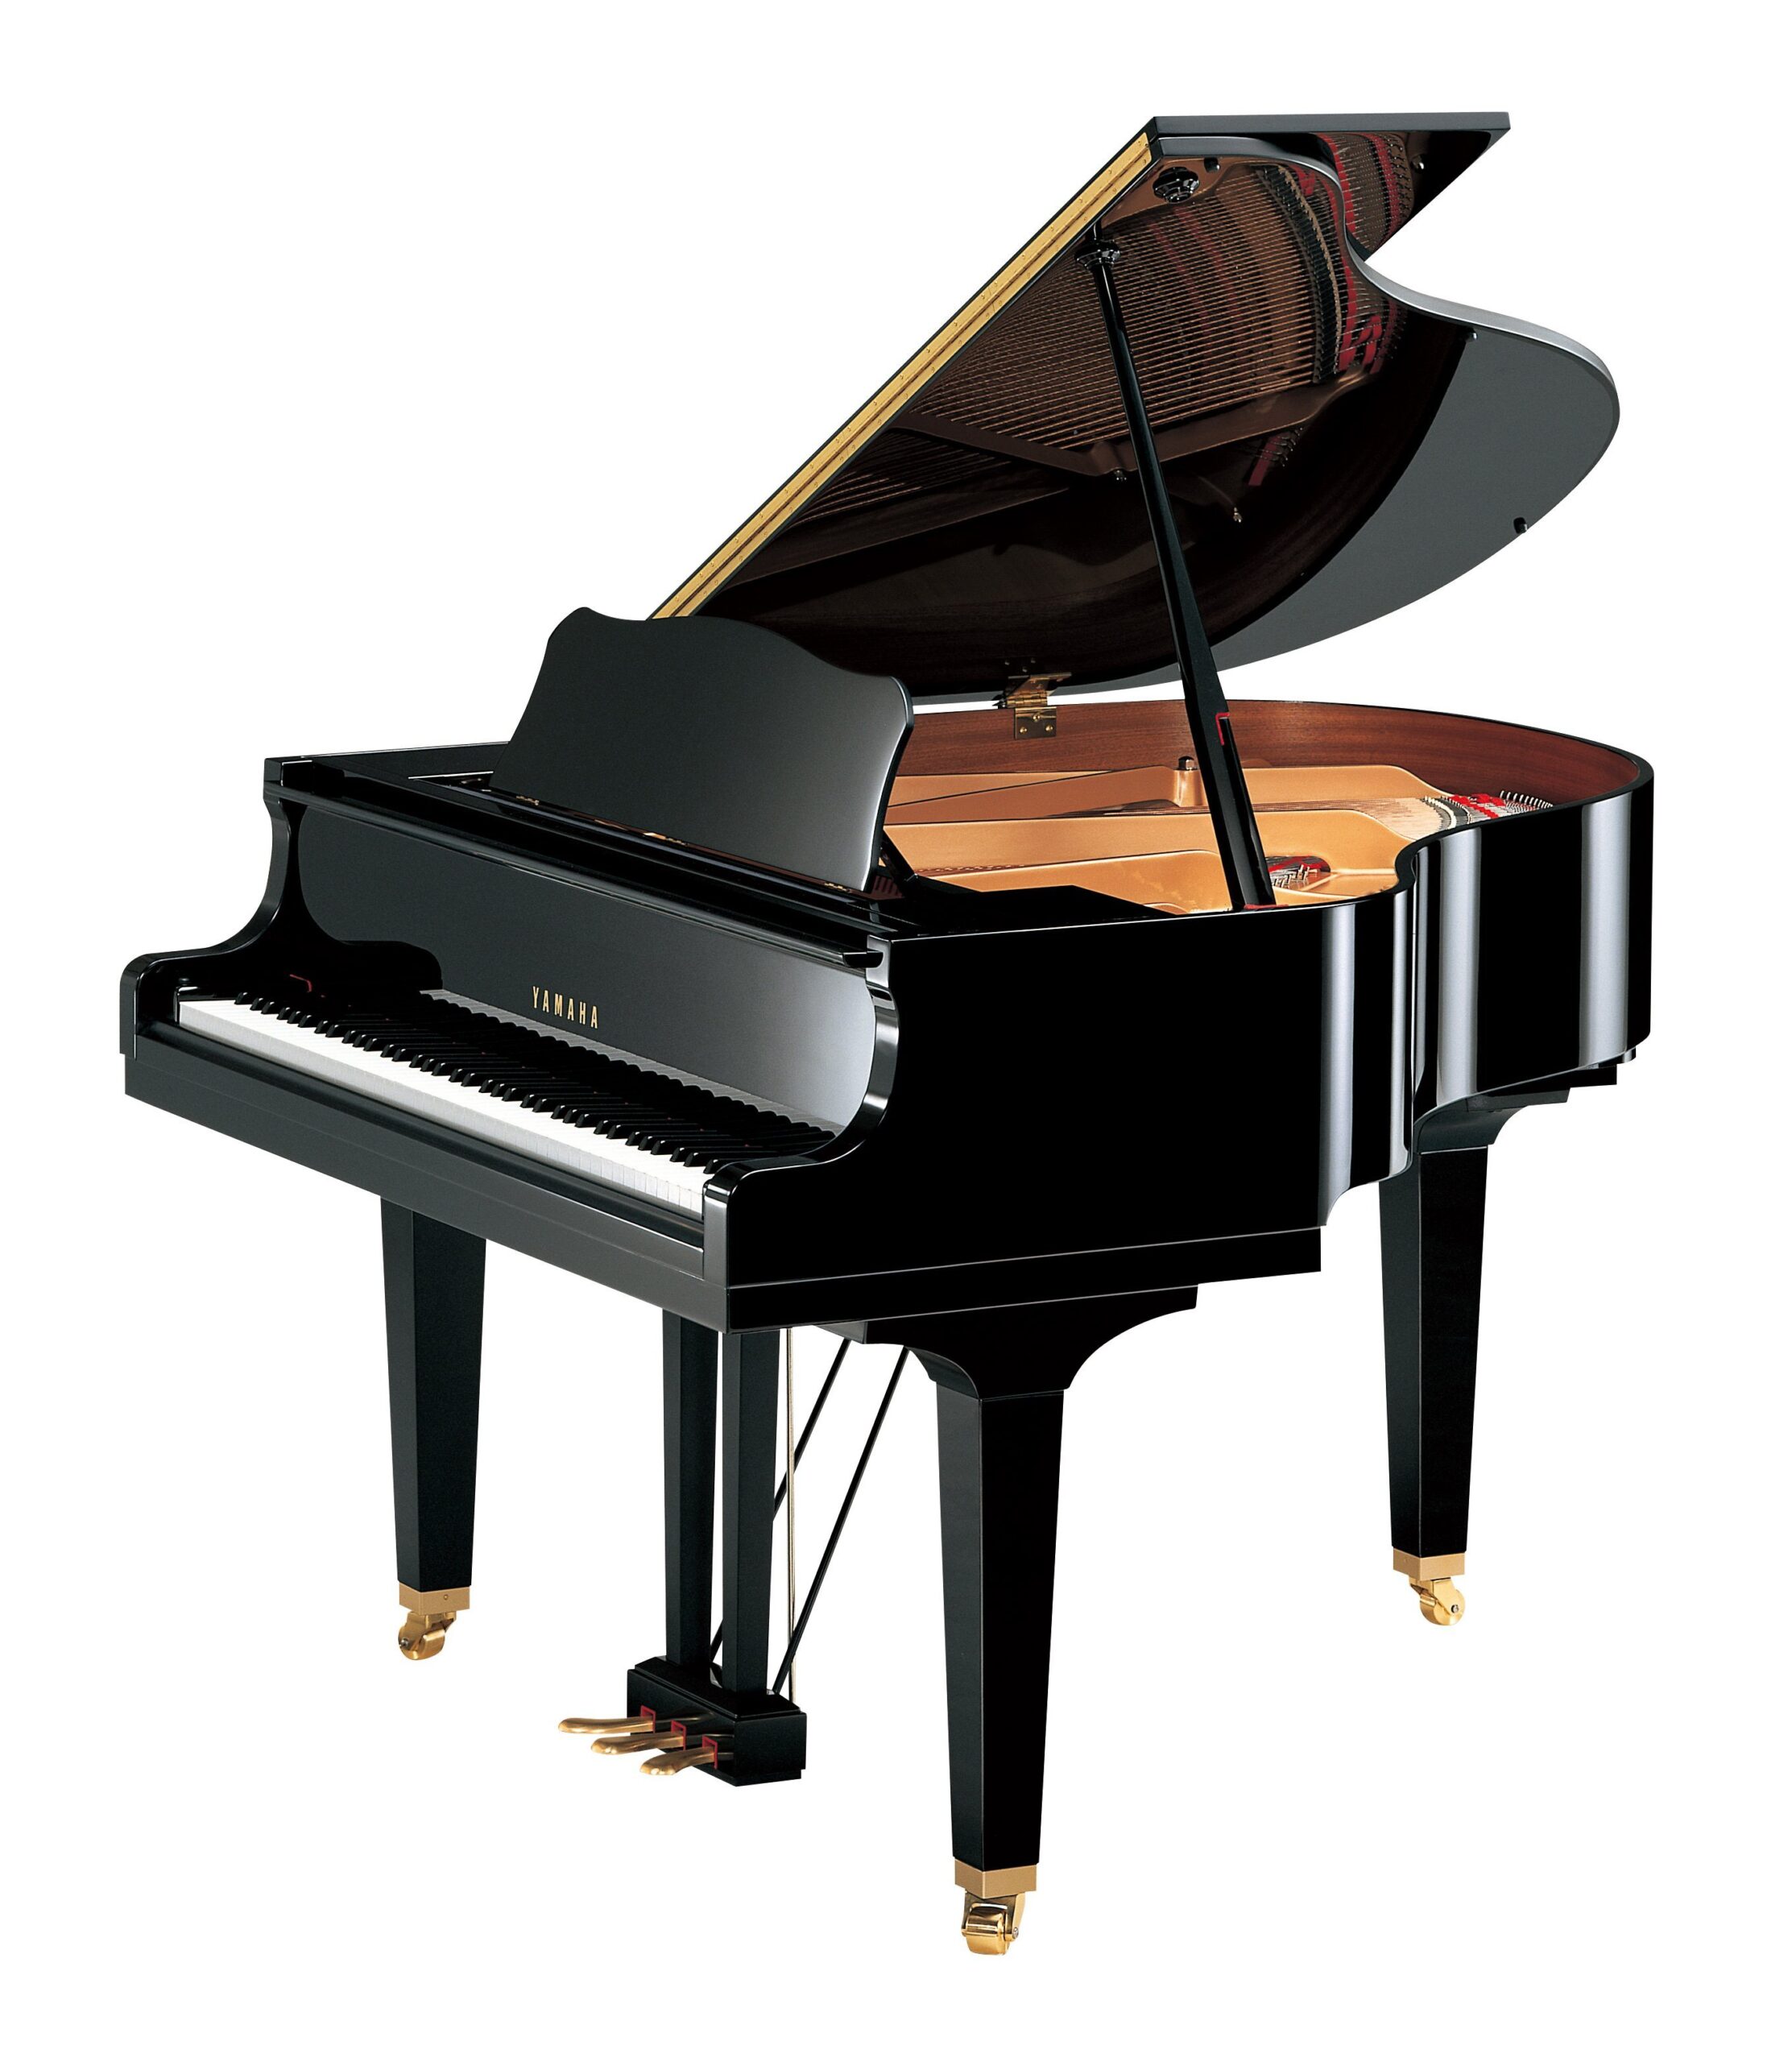 Đàn Piano Yamaha GB1K